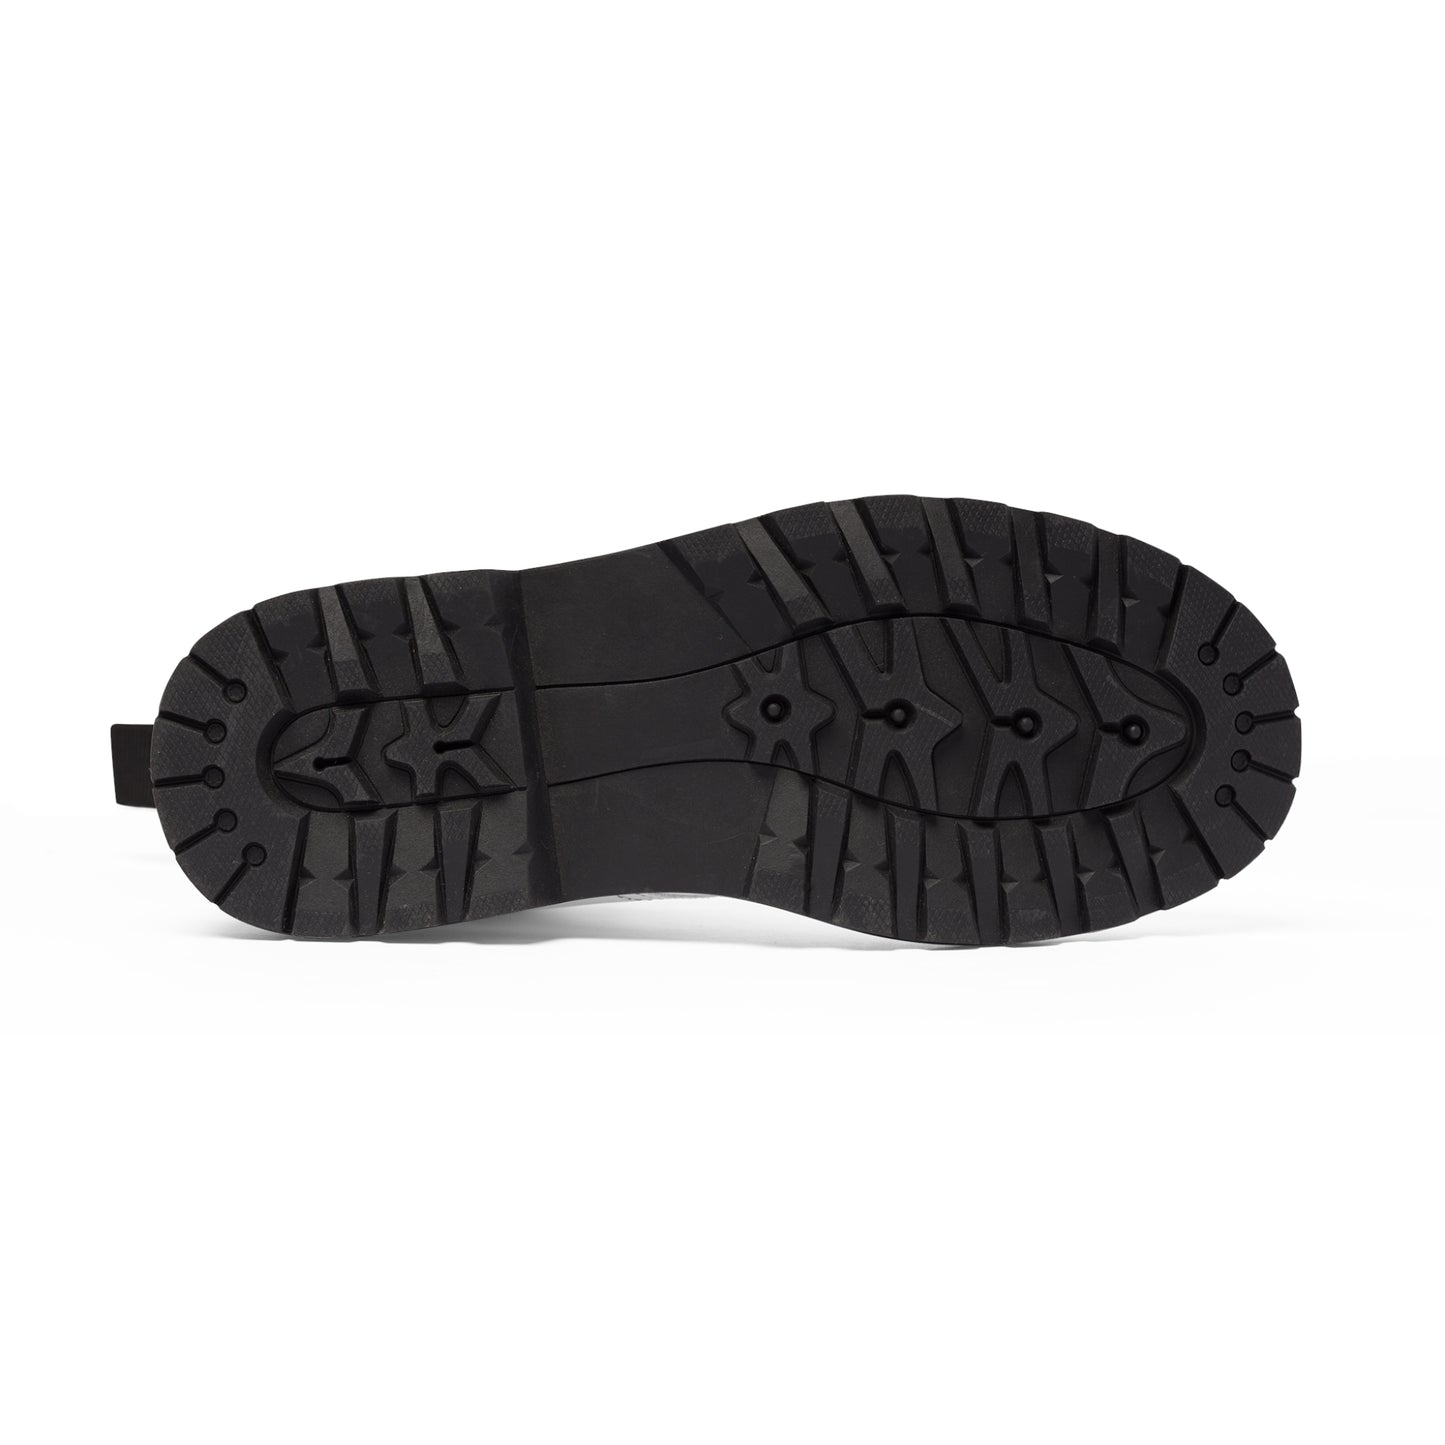 Men's Canvas Boots - 02862 US 10.5 Black sole